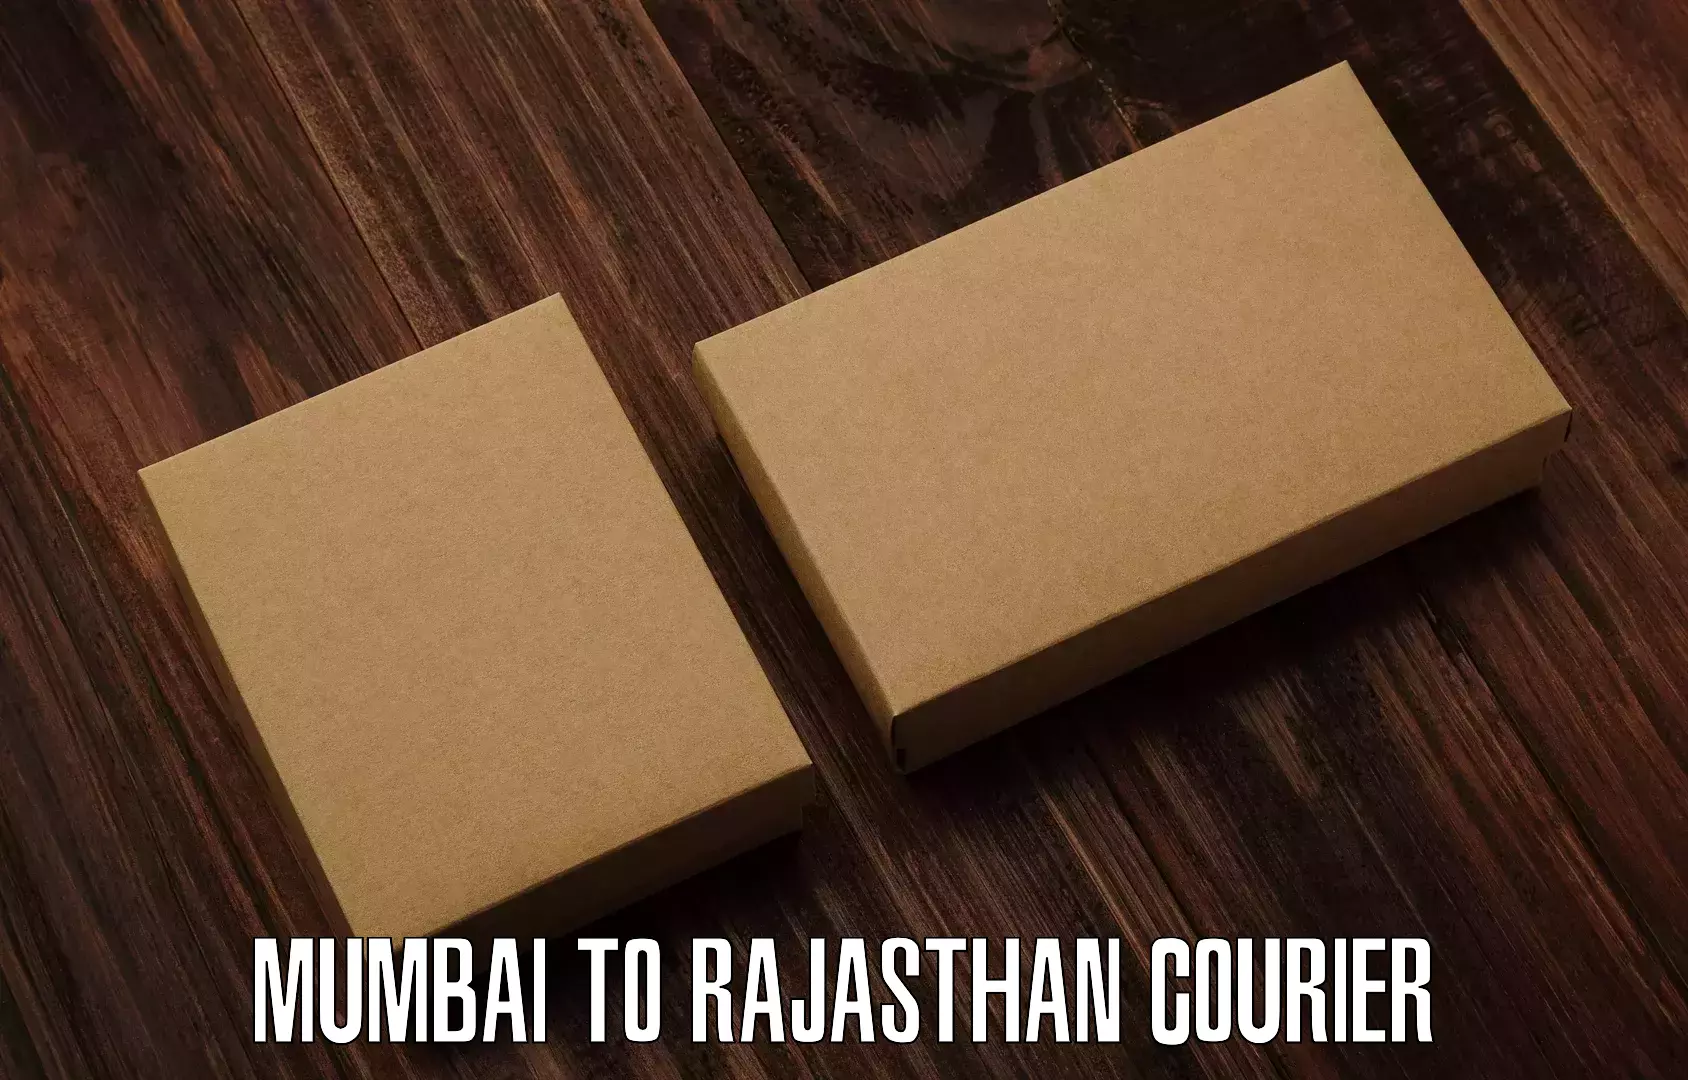 Return courier service Mumbai to Dungarpur